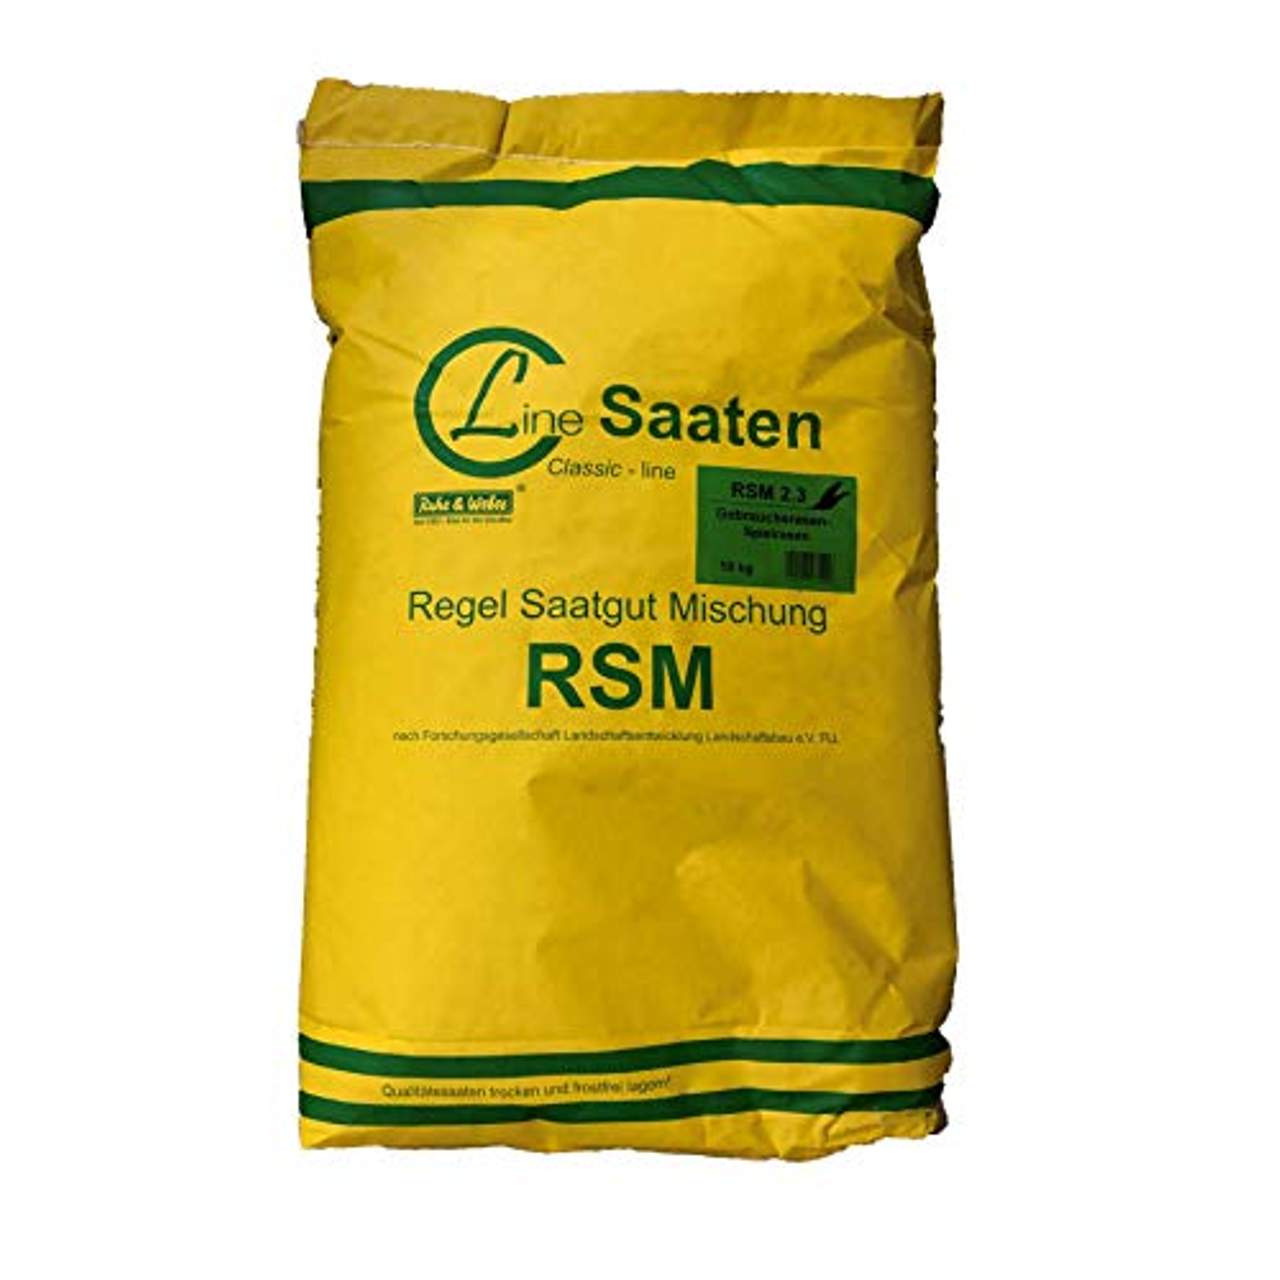 RSM 2.3 Spielrasen Gebrauchsrasen Rasensamen 10kg Grassamen